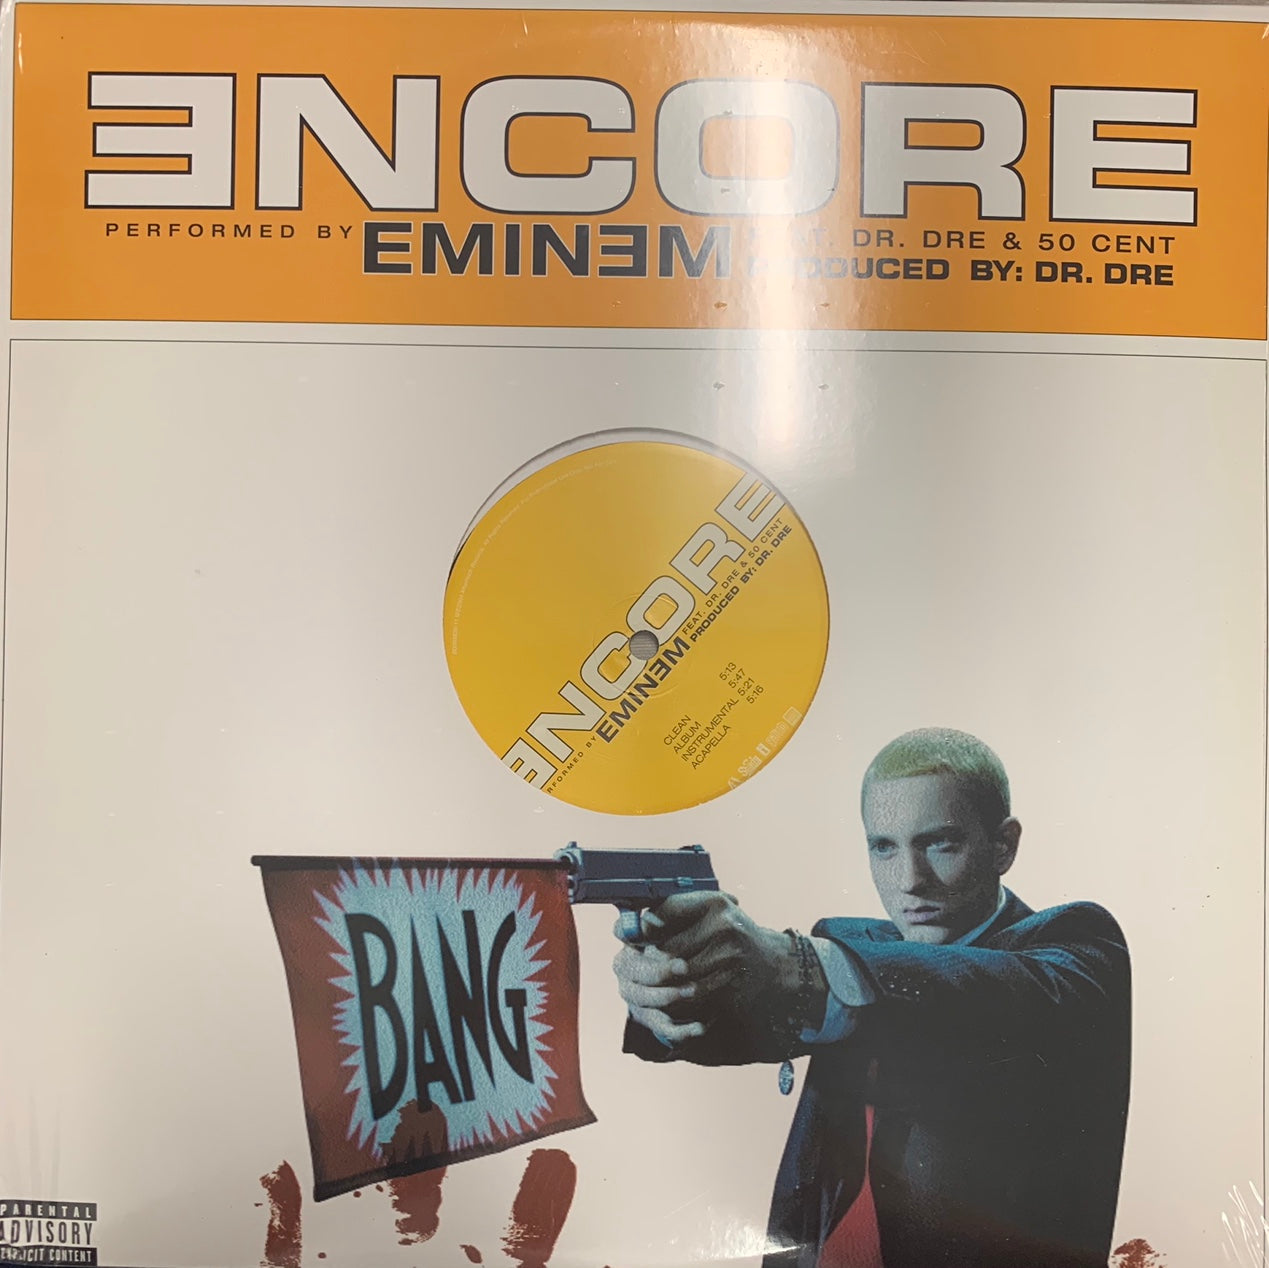 Eminem Feat Dr Dre “Encore” 4 Version 12inch Vinyl